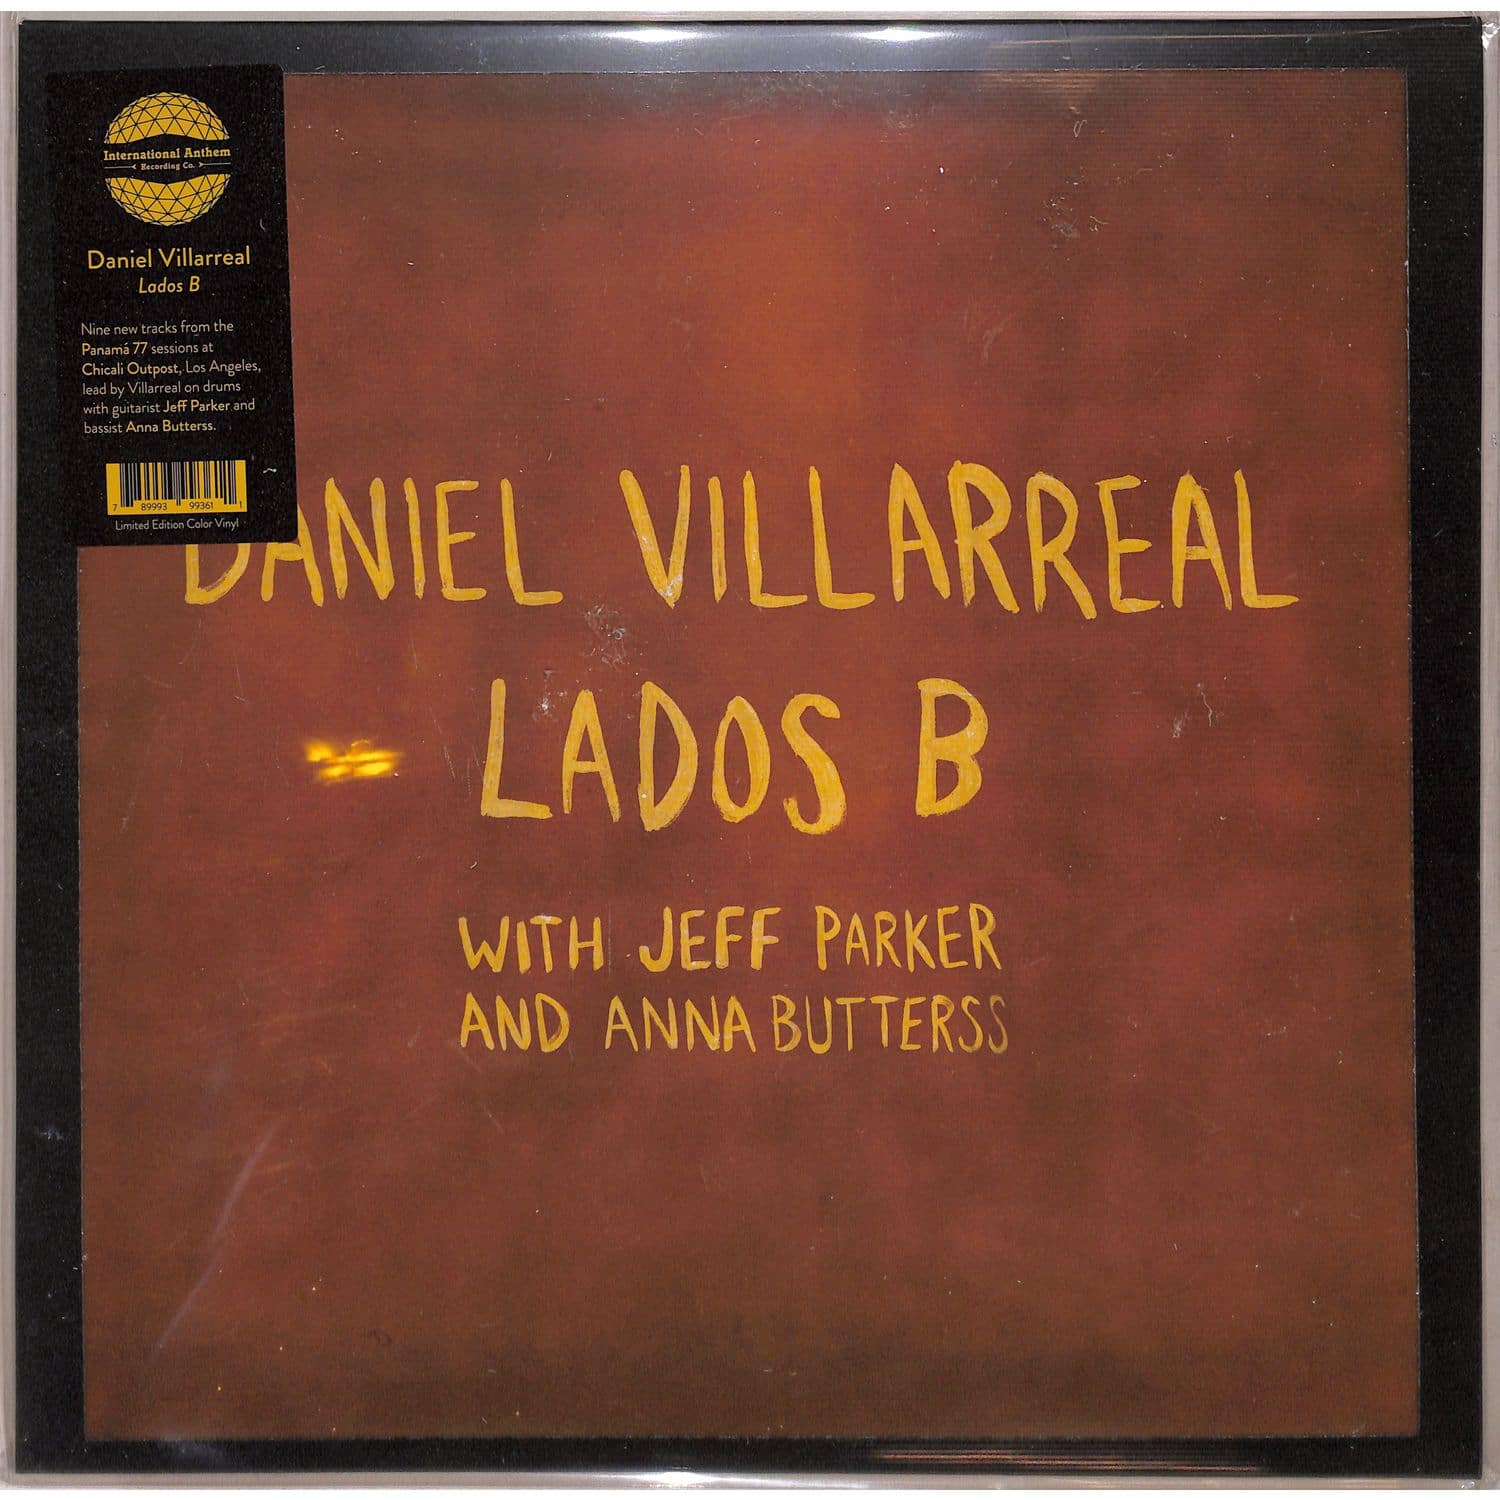 Daniel Villarreal - LADOS B 